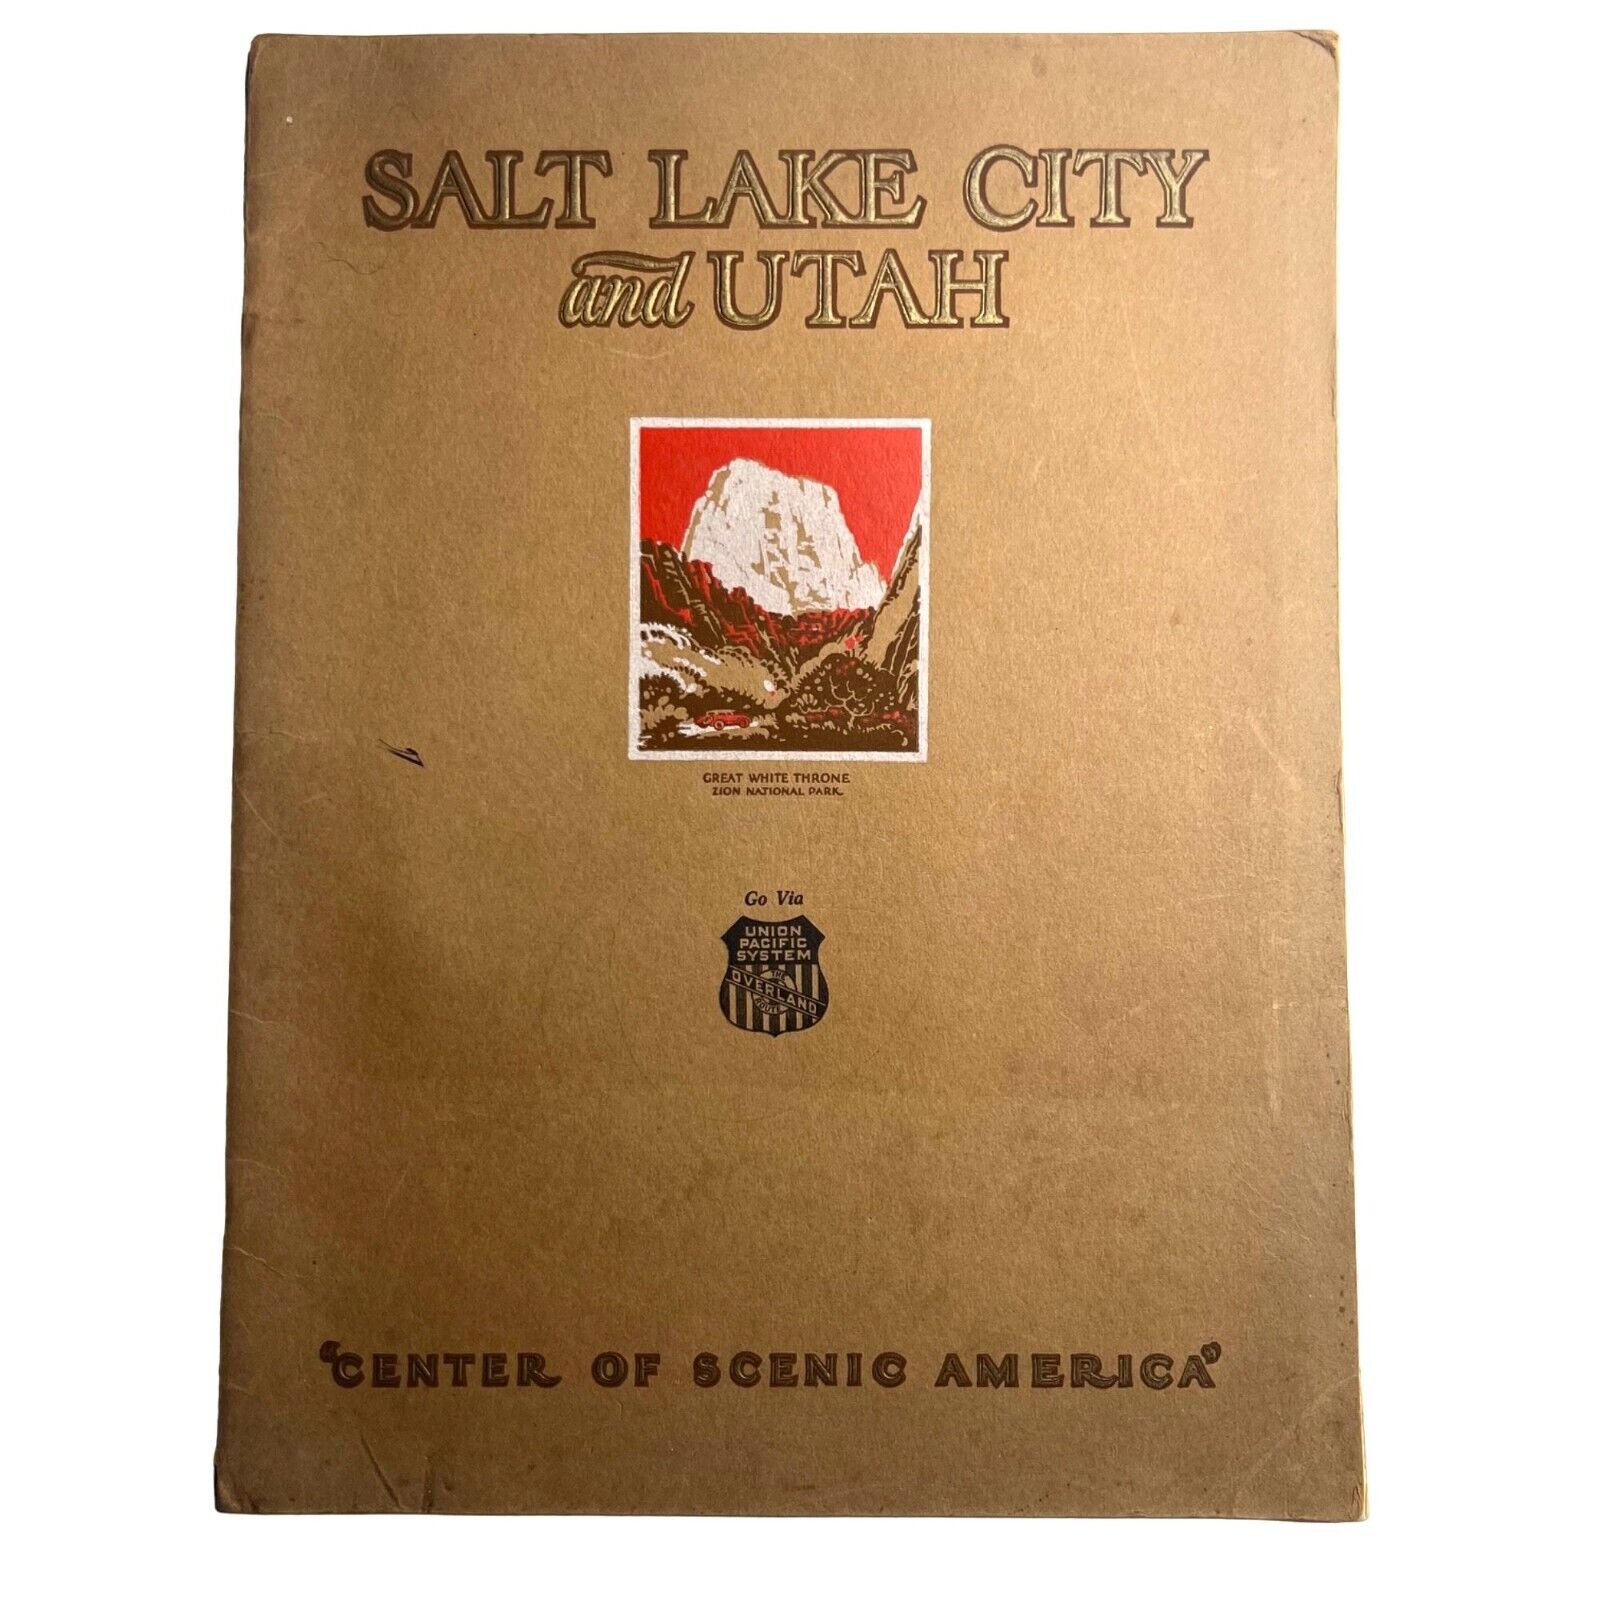 VTG Salt Lake City and Utah “the Center of Scenic America” 1927